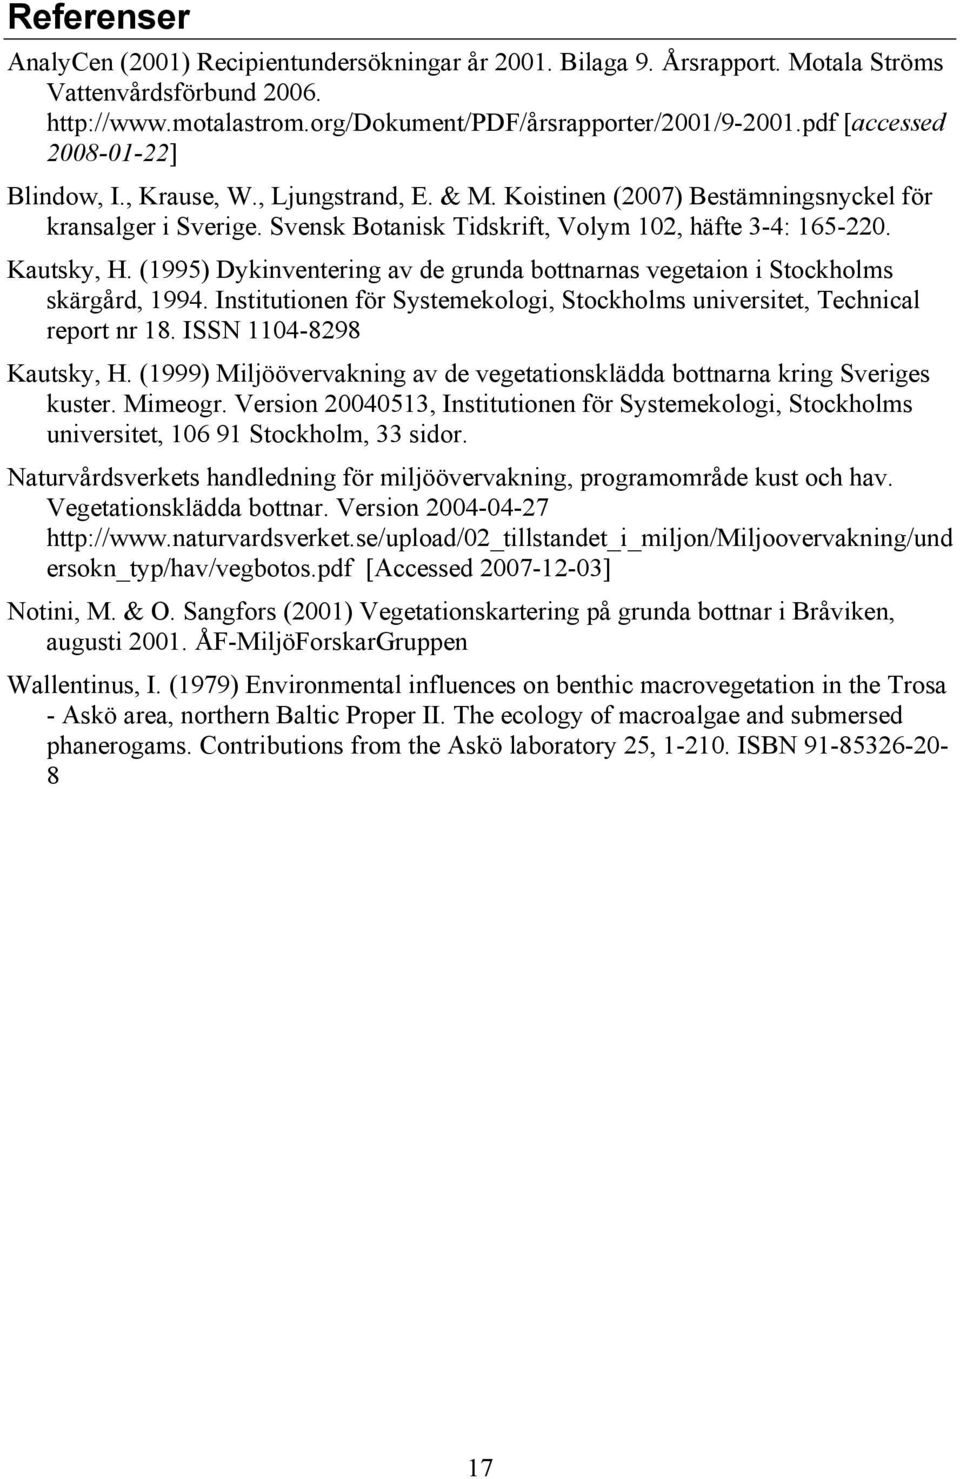 Kautsky, H. (199) Dykinventering av de grunda bottnarnas vegetaion i Stockholms skärgård, 1994. Institutionen för Systemekologi, Stockholms universitet, Technical report nr 18.